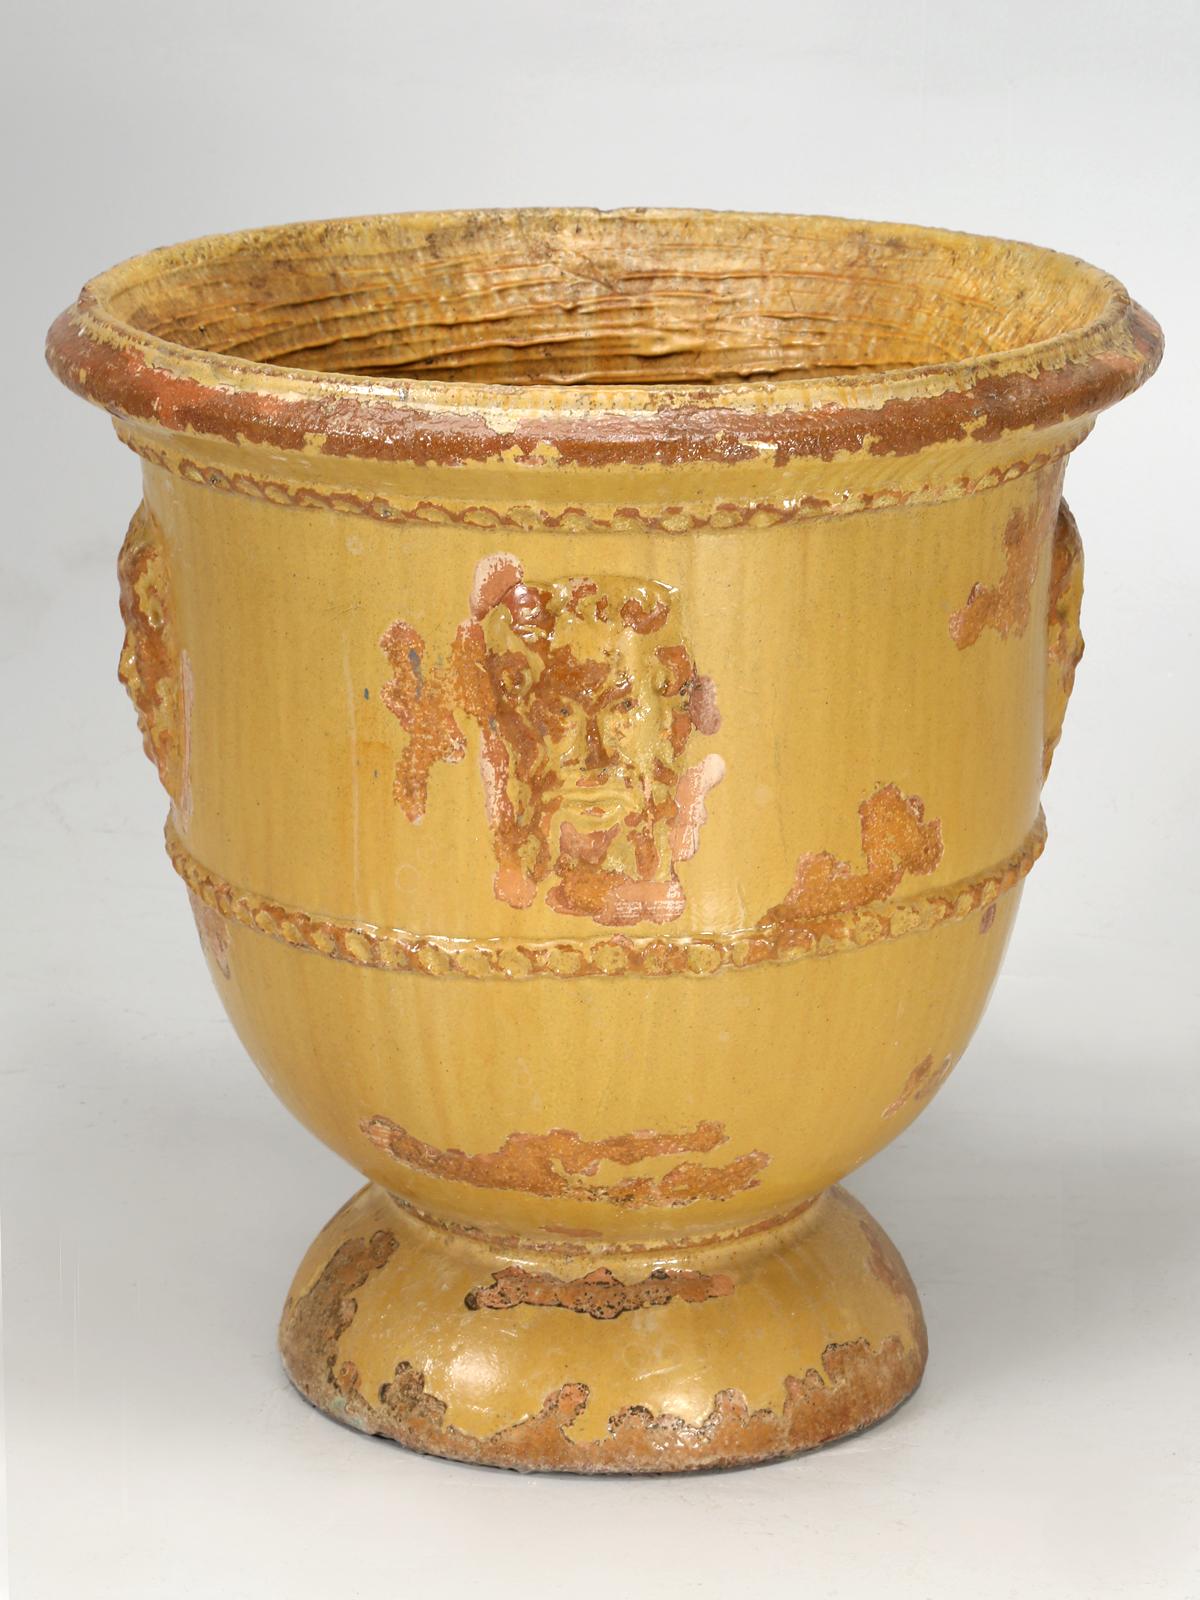 Le pot de fleurs français, ou plus communément appelé pot d'Anduze, était produit par la Poterie de la Madeleine dans le sud de la France. Cette jardinière française d'Anduze a traversé plusieurs hivers de Chicago et présente une belle patine